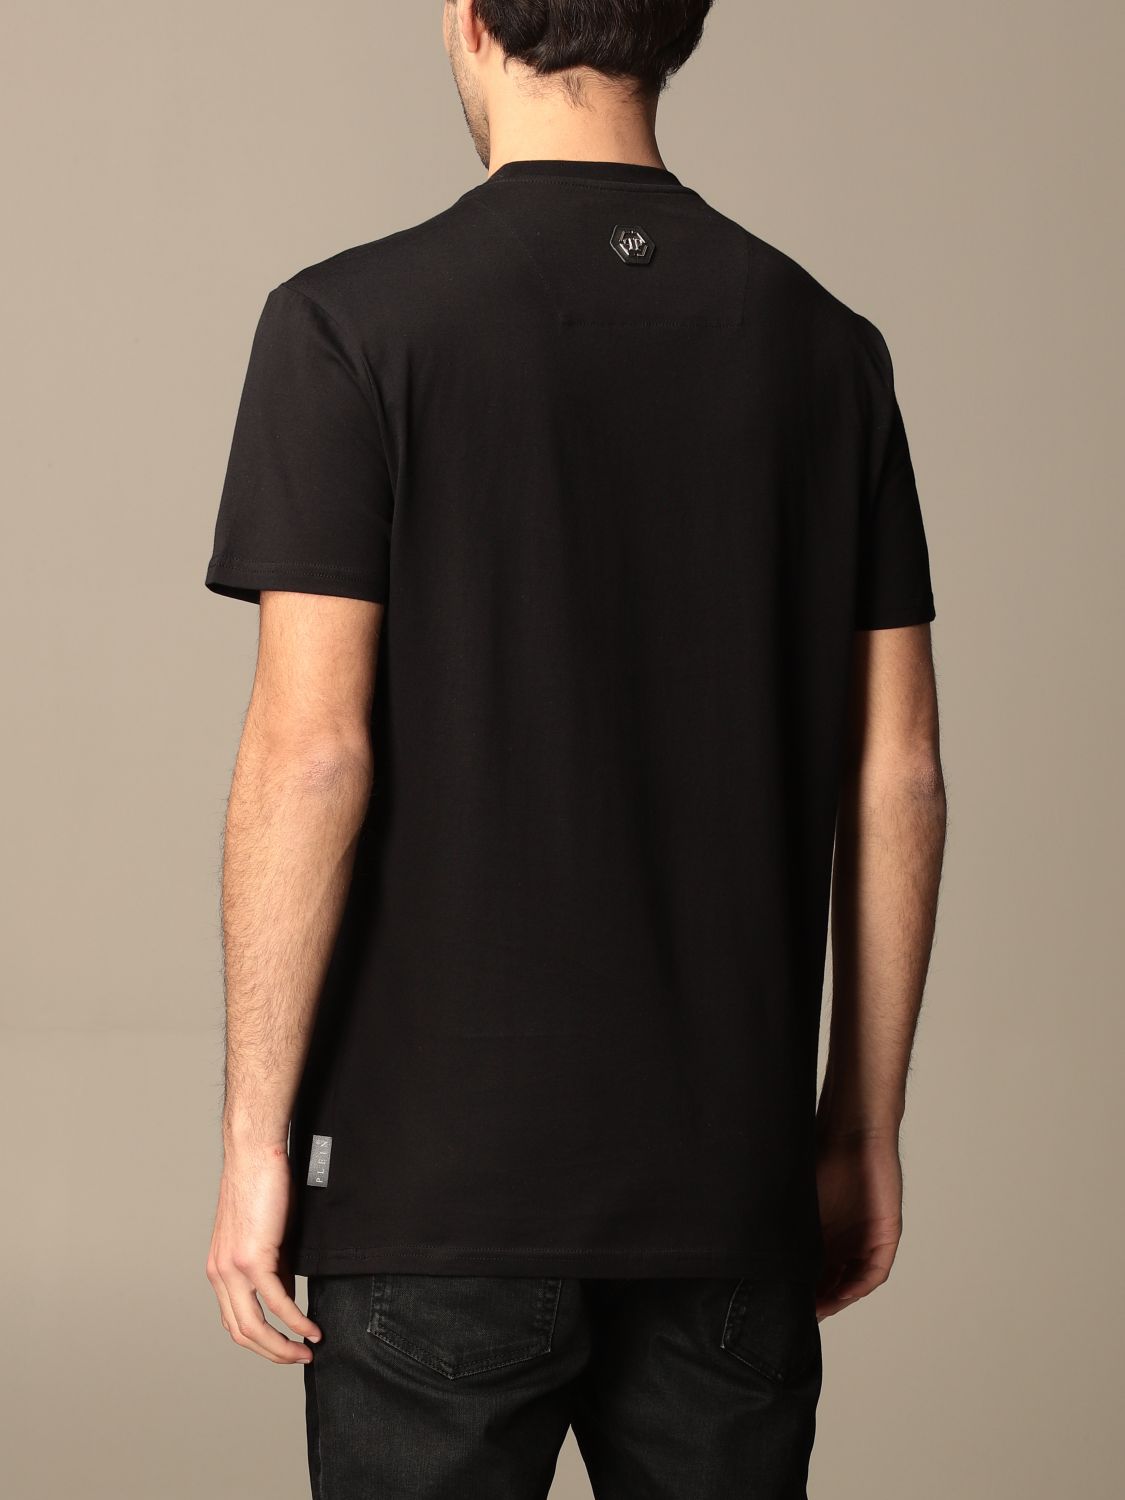 T-shirt Philipp Plein: T-shirt Philipp Plein in cotone con teschio nero 3